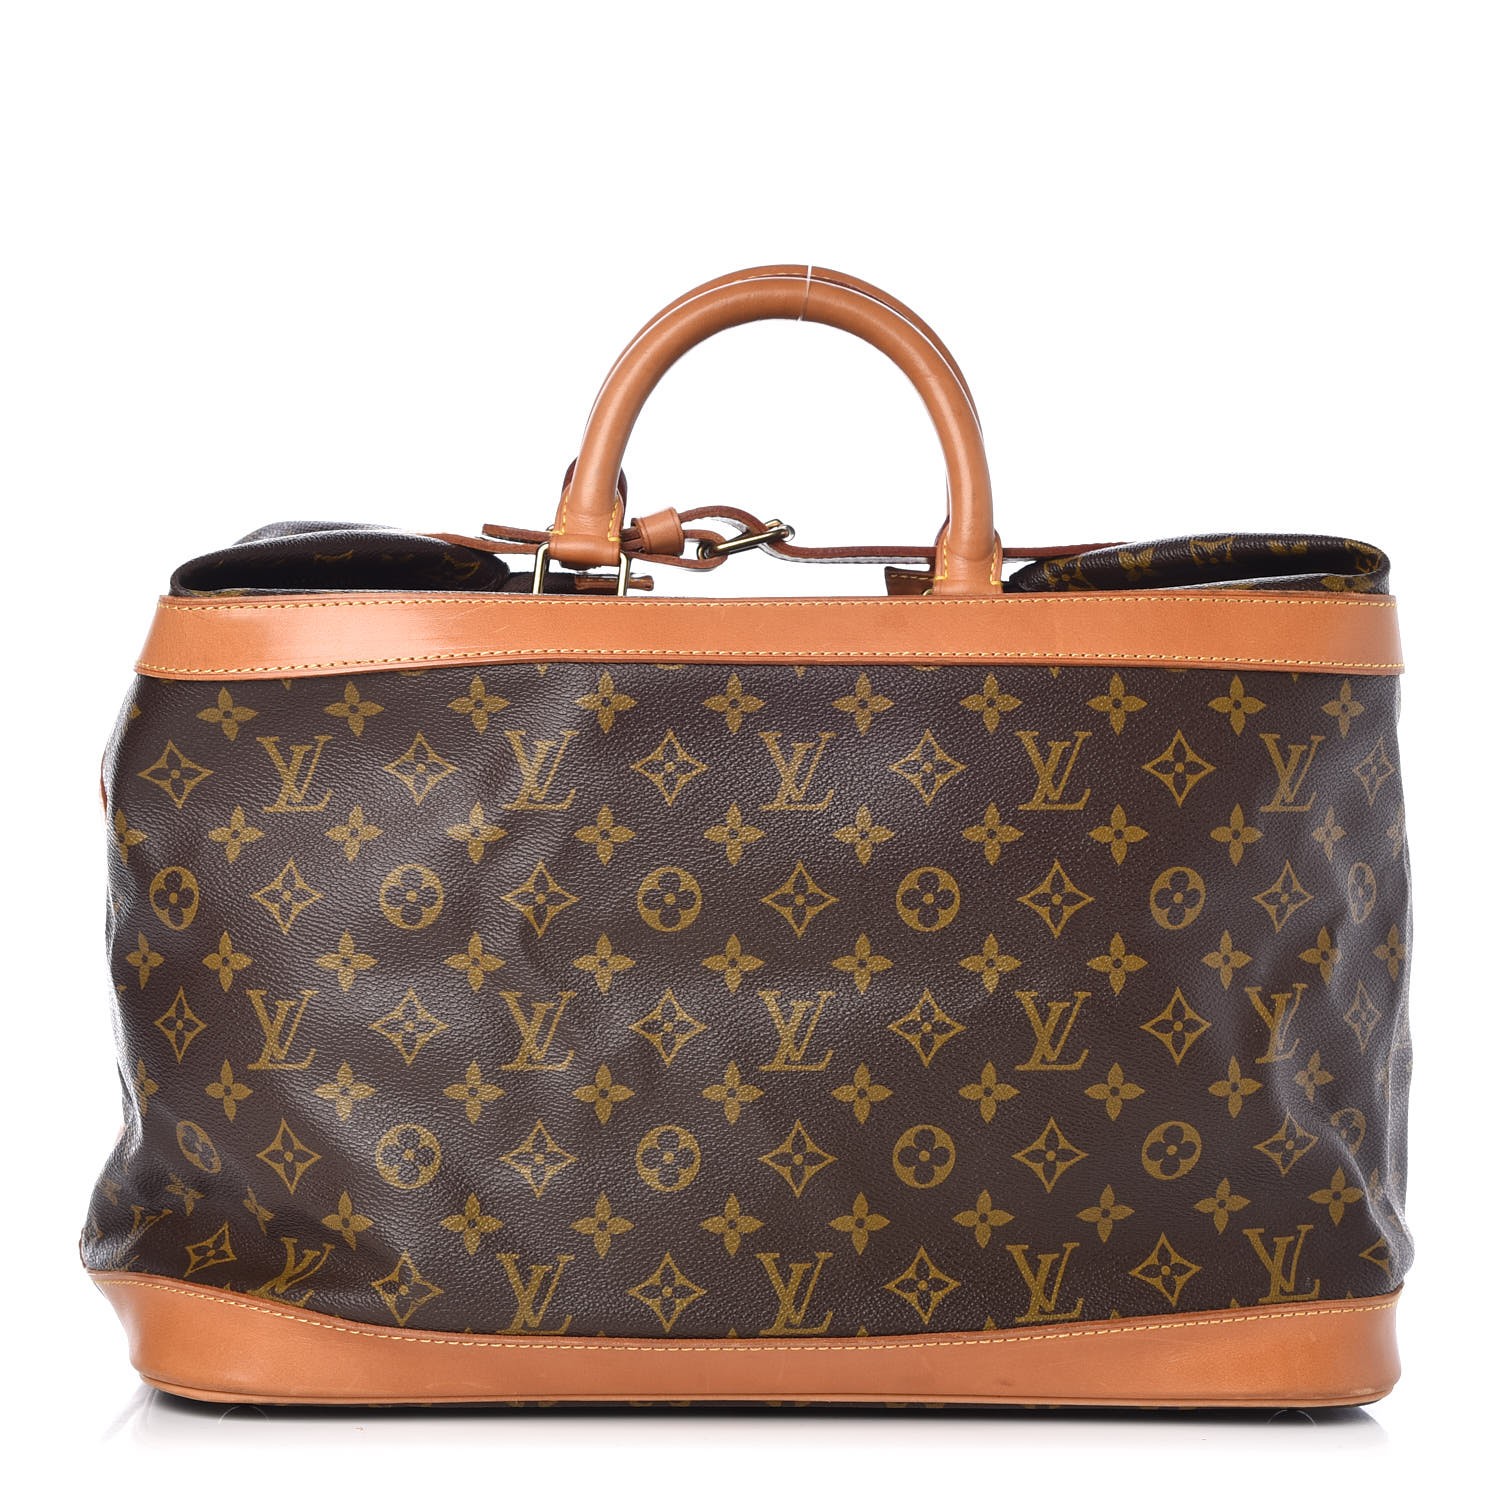 LOUIS VUITTON M41139 Monogram Cruiser bag 40 Bag Duffle Bag  Brown/GoldHardware